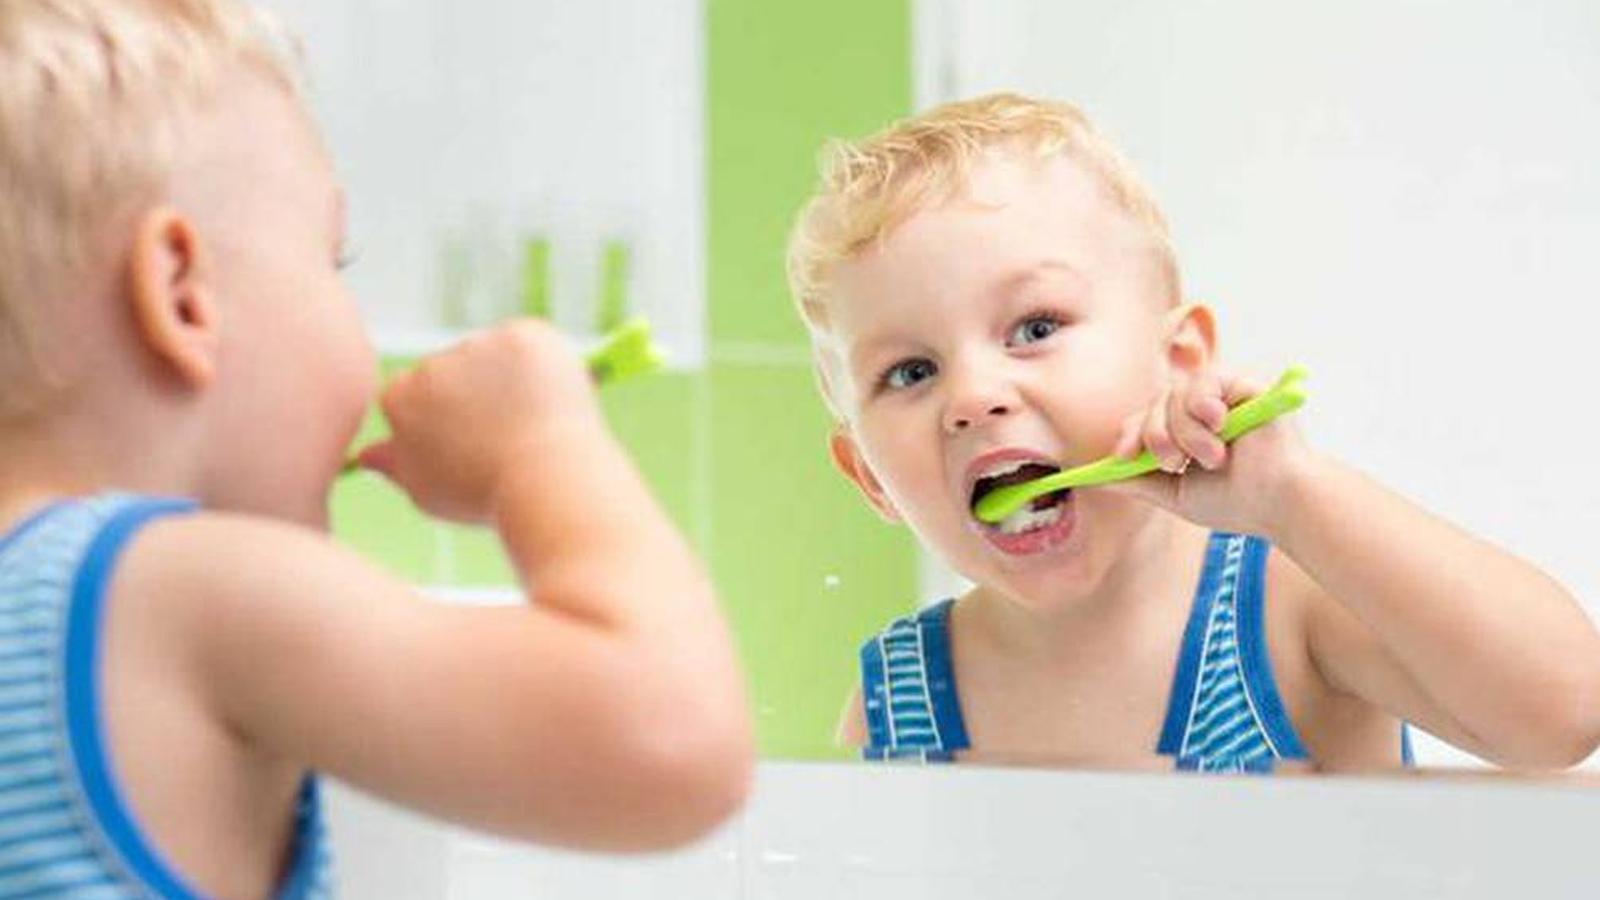  Răng bé 1 tuổi bị vàng : Nguyên nhân và cách chăm sóc răng cho trẻ